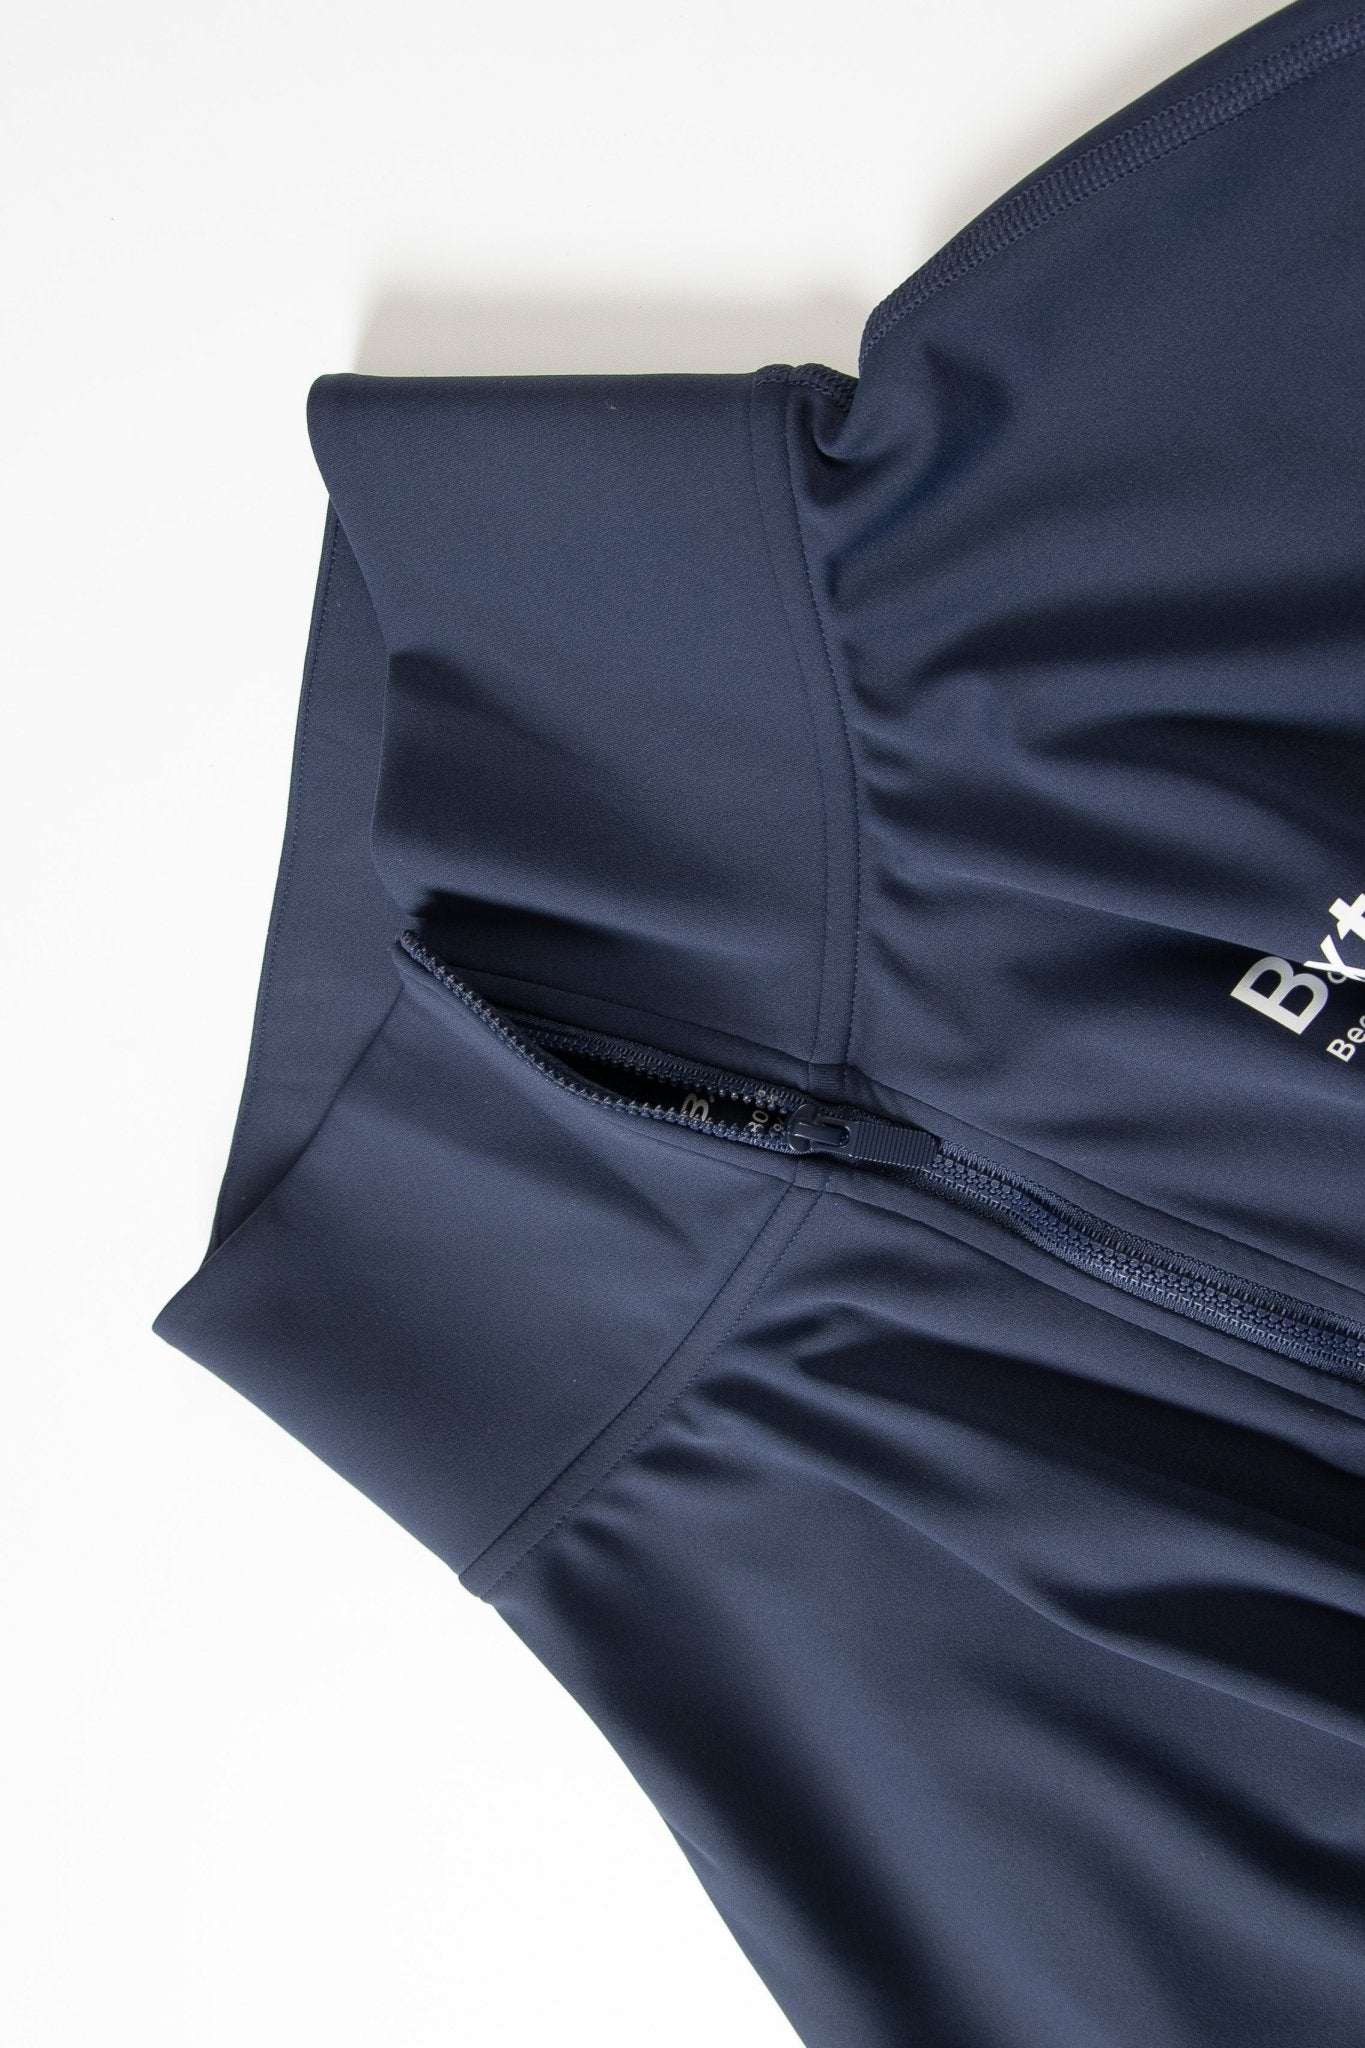 Zip up jacket - Navy Blue